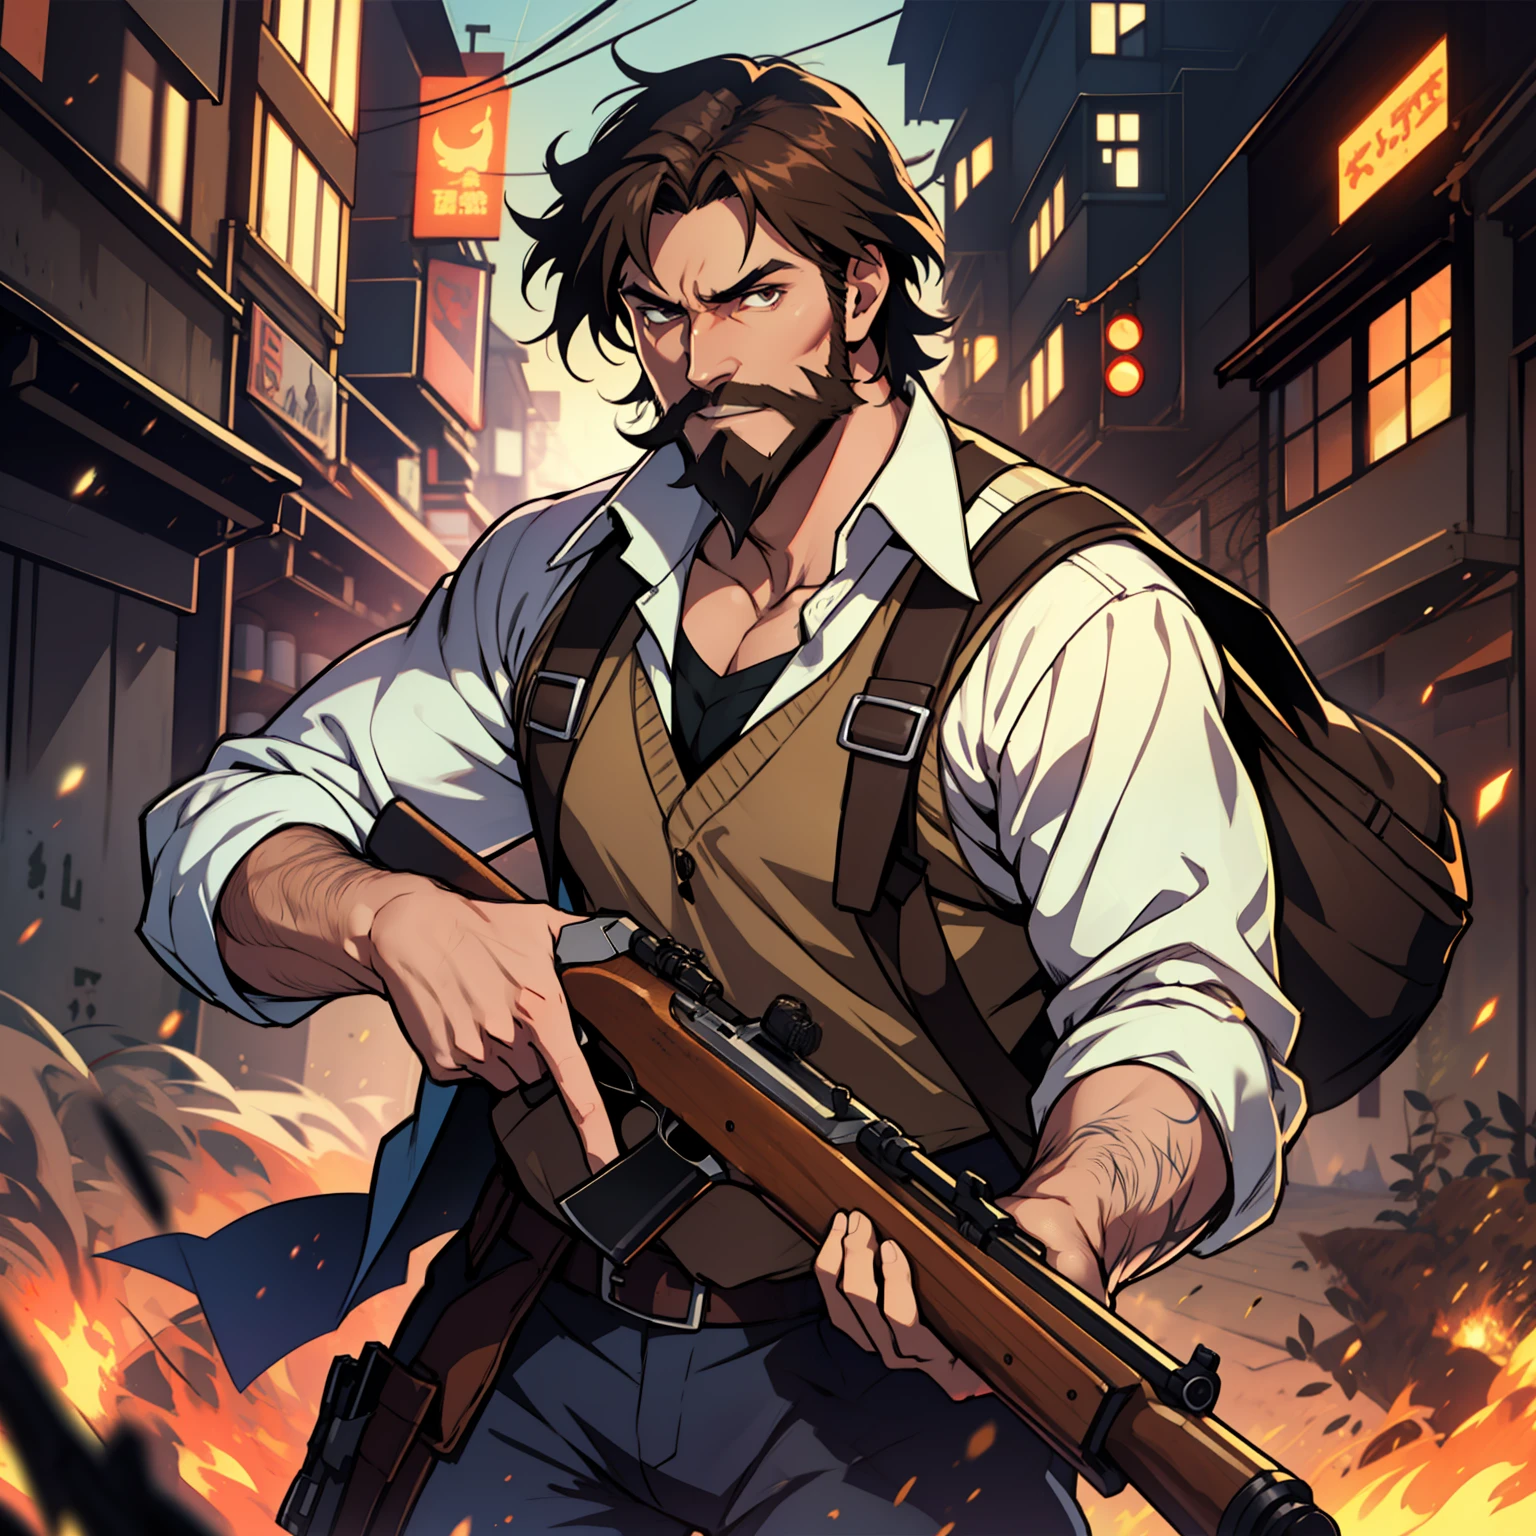 Один, аниме парень с каштановыми волосами и грубоватой коричневой бородой держит винчестерскую винтовку, динамическое освещение